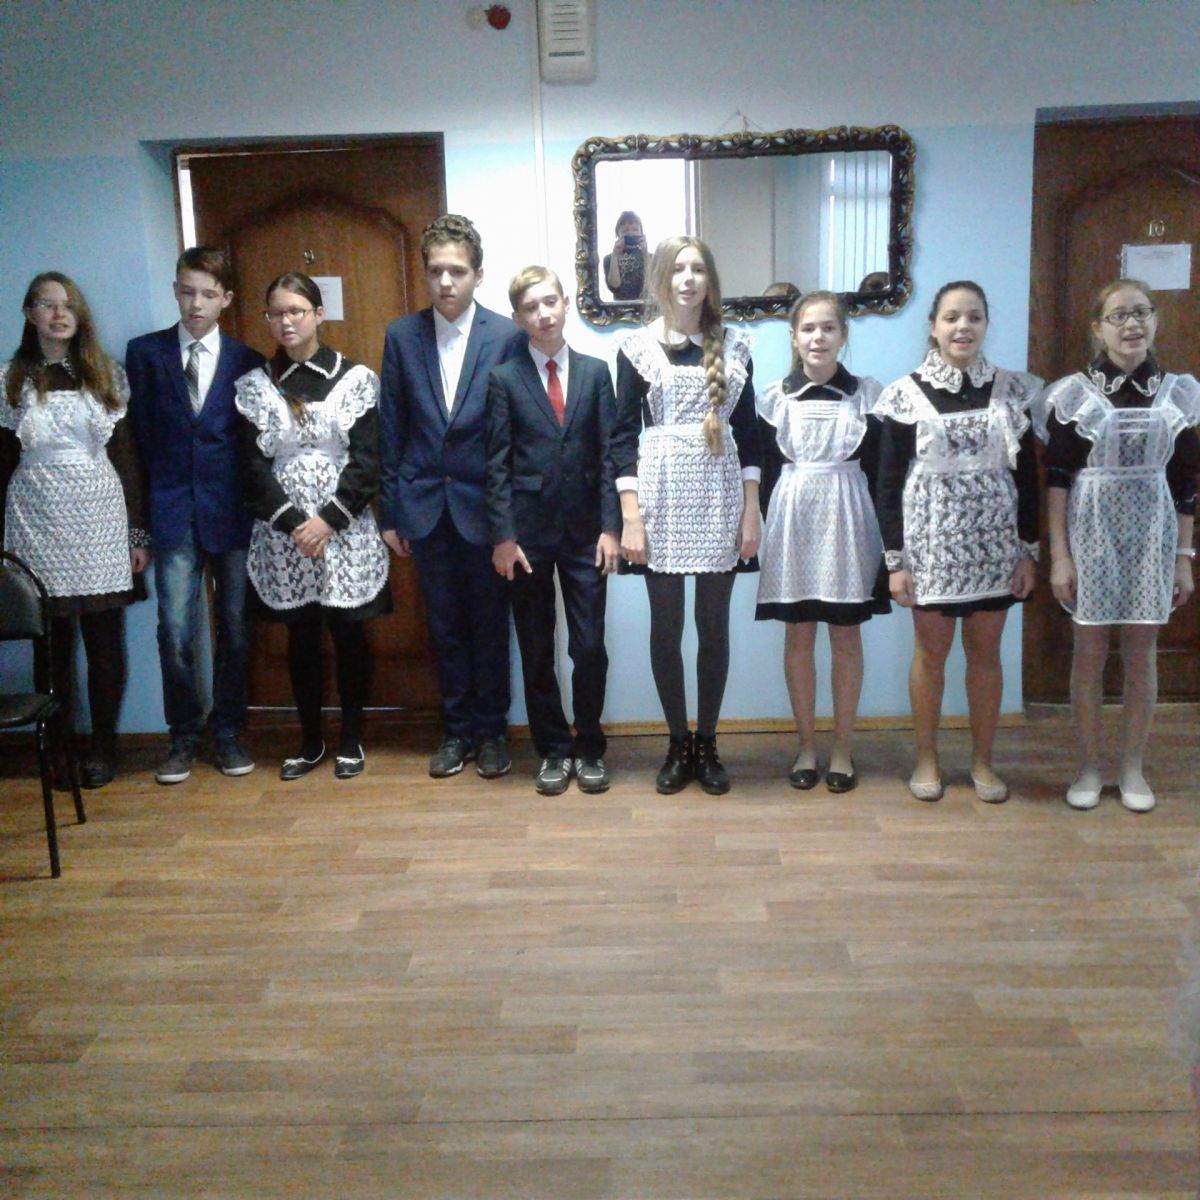 27 октября 2016 года в ГБСУ СОССЗН РМ «Комсомольский пансионат ветеранов войны и труда» приходили учащиеся Дома детского творчества с концертной программой.